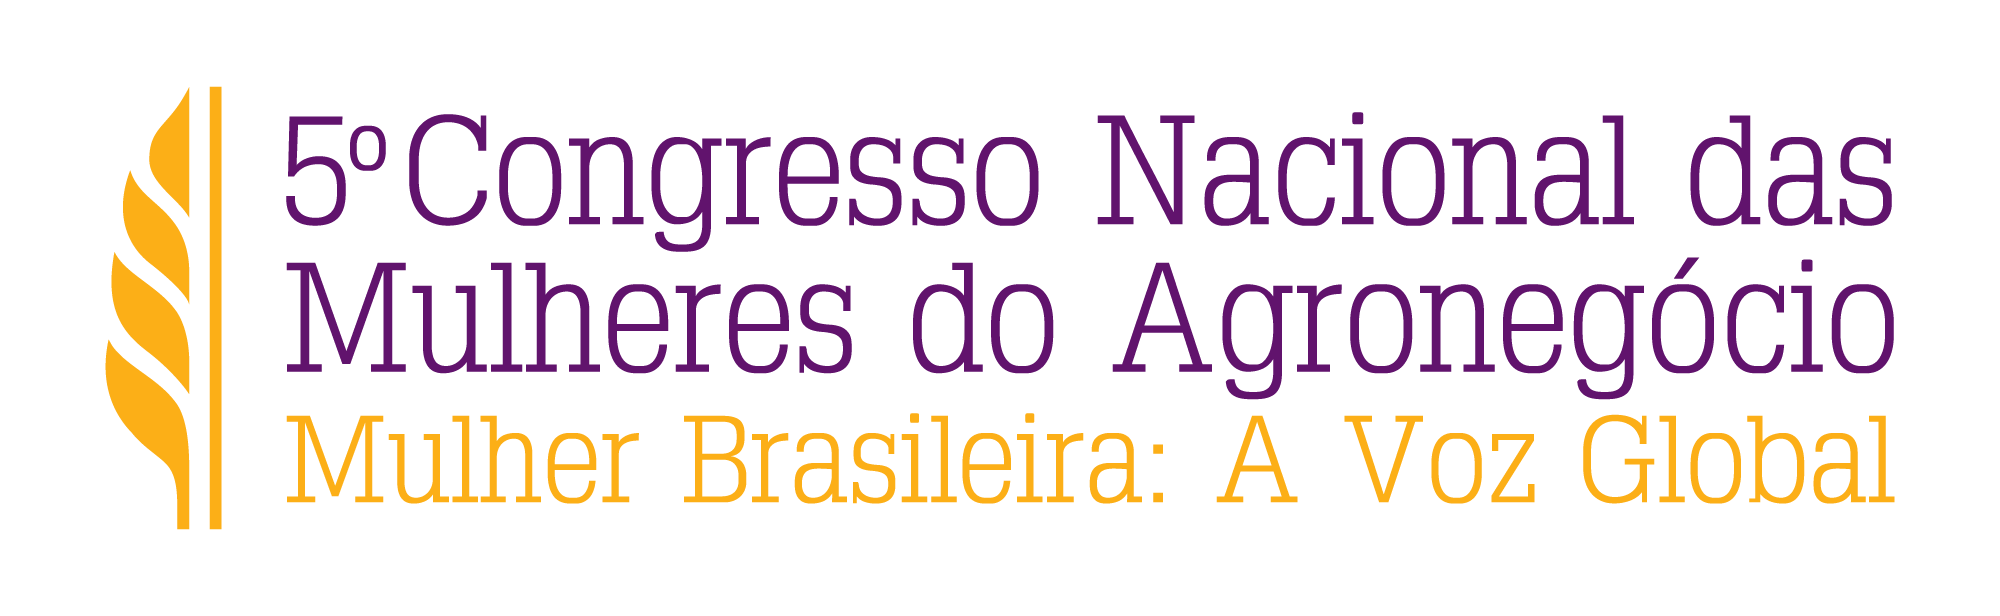 5 Congresso Nacional das Mulheres do Agronegócio